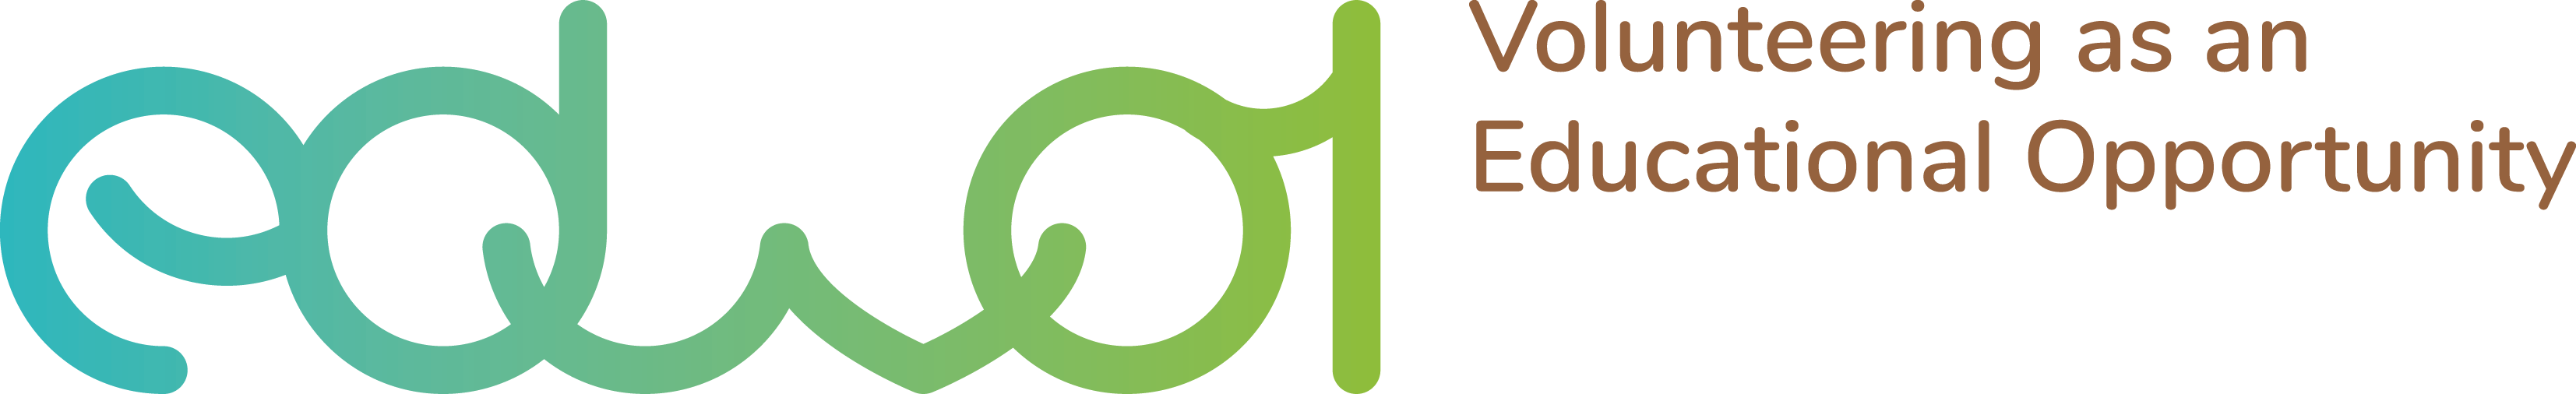 eduvol logo2